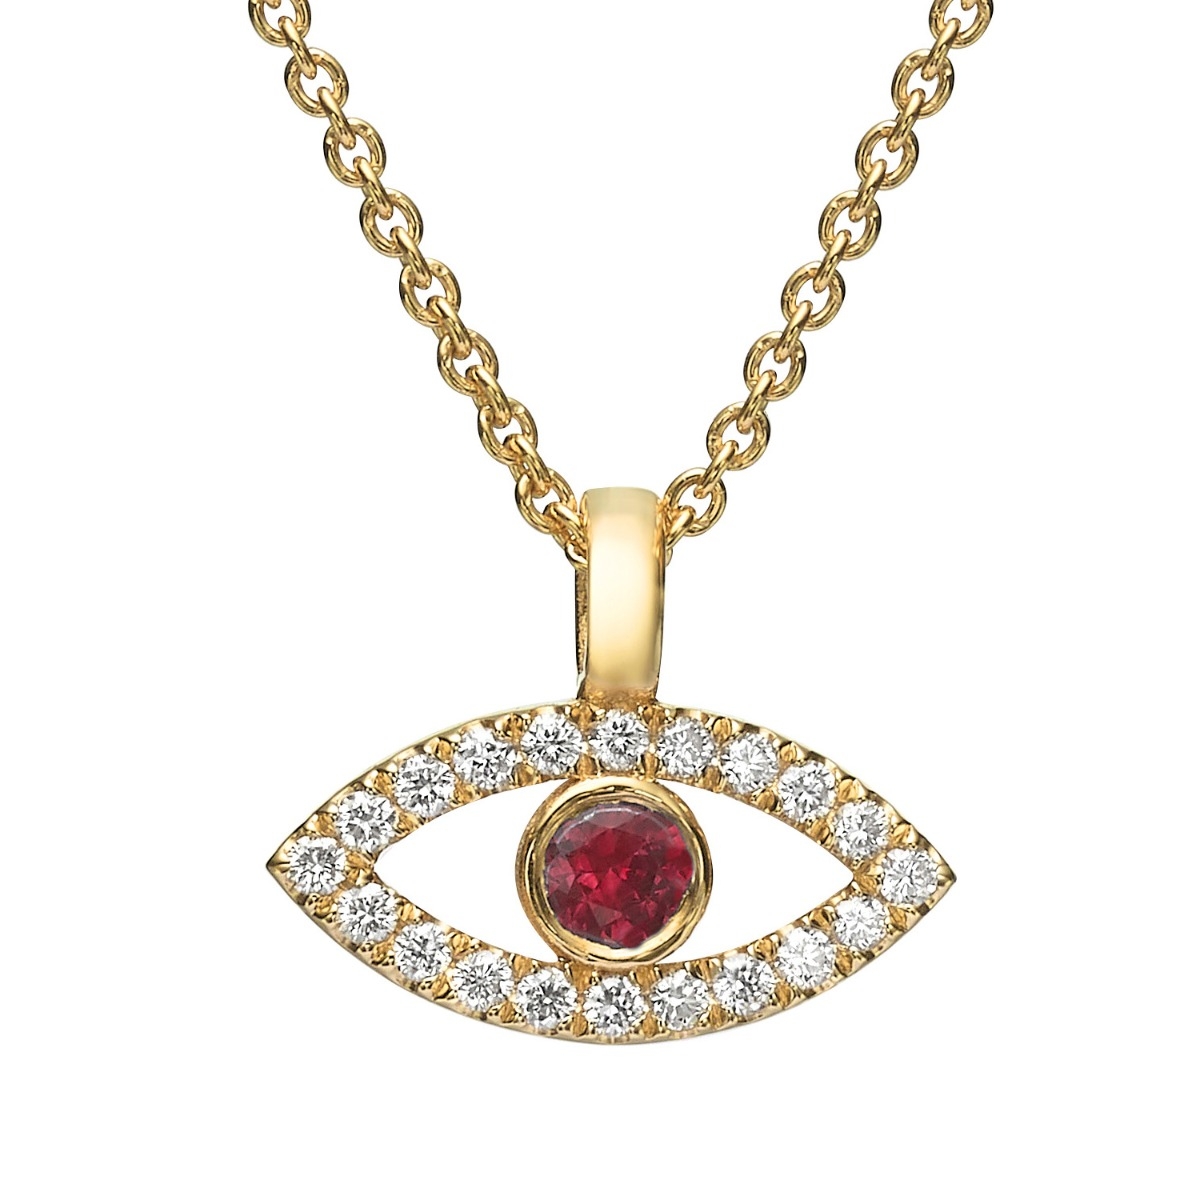 Yaniv Fine Jewelry 18K Gold Evil Eye Diamond Necklace with Ruby Stone - 1